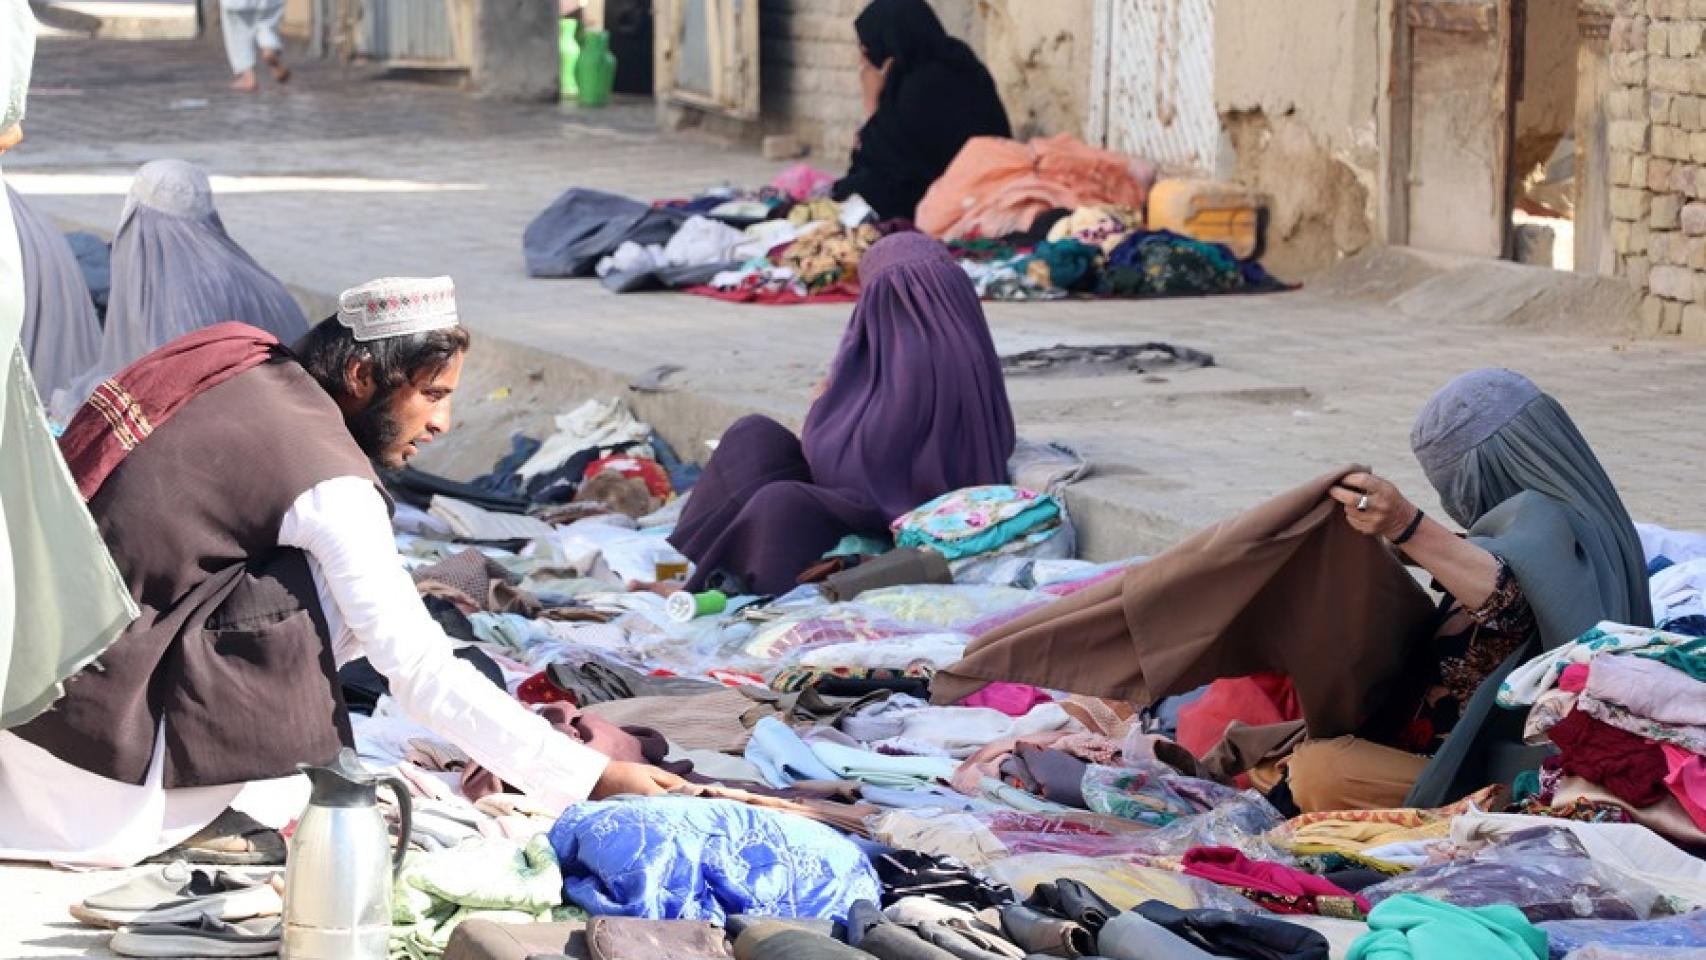 Mujeres afganas venden ropa usada al costado de la carretera, en una fotografía de archivo.